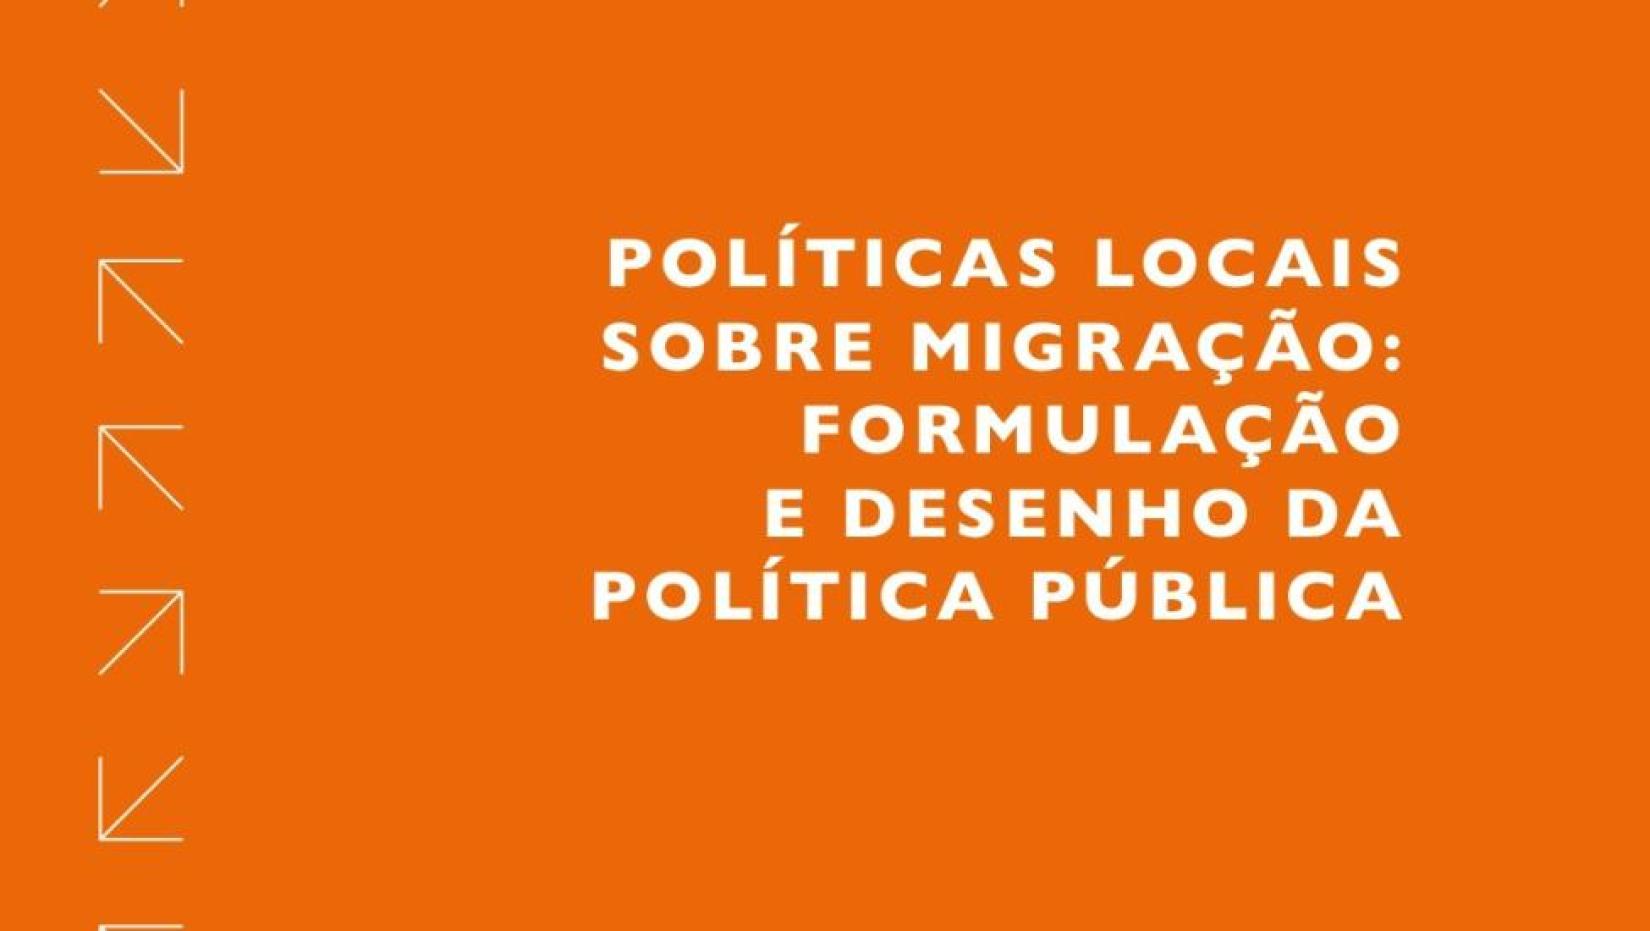 Guia irá auxiliar gestores públicos na formulação de políticas locais sobre migração